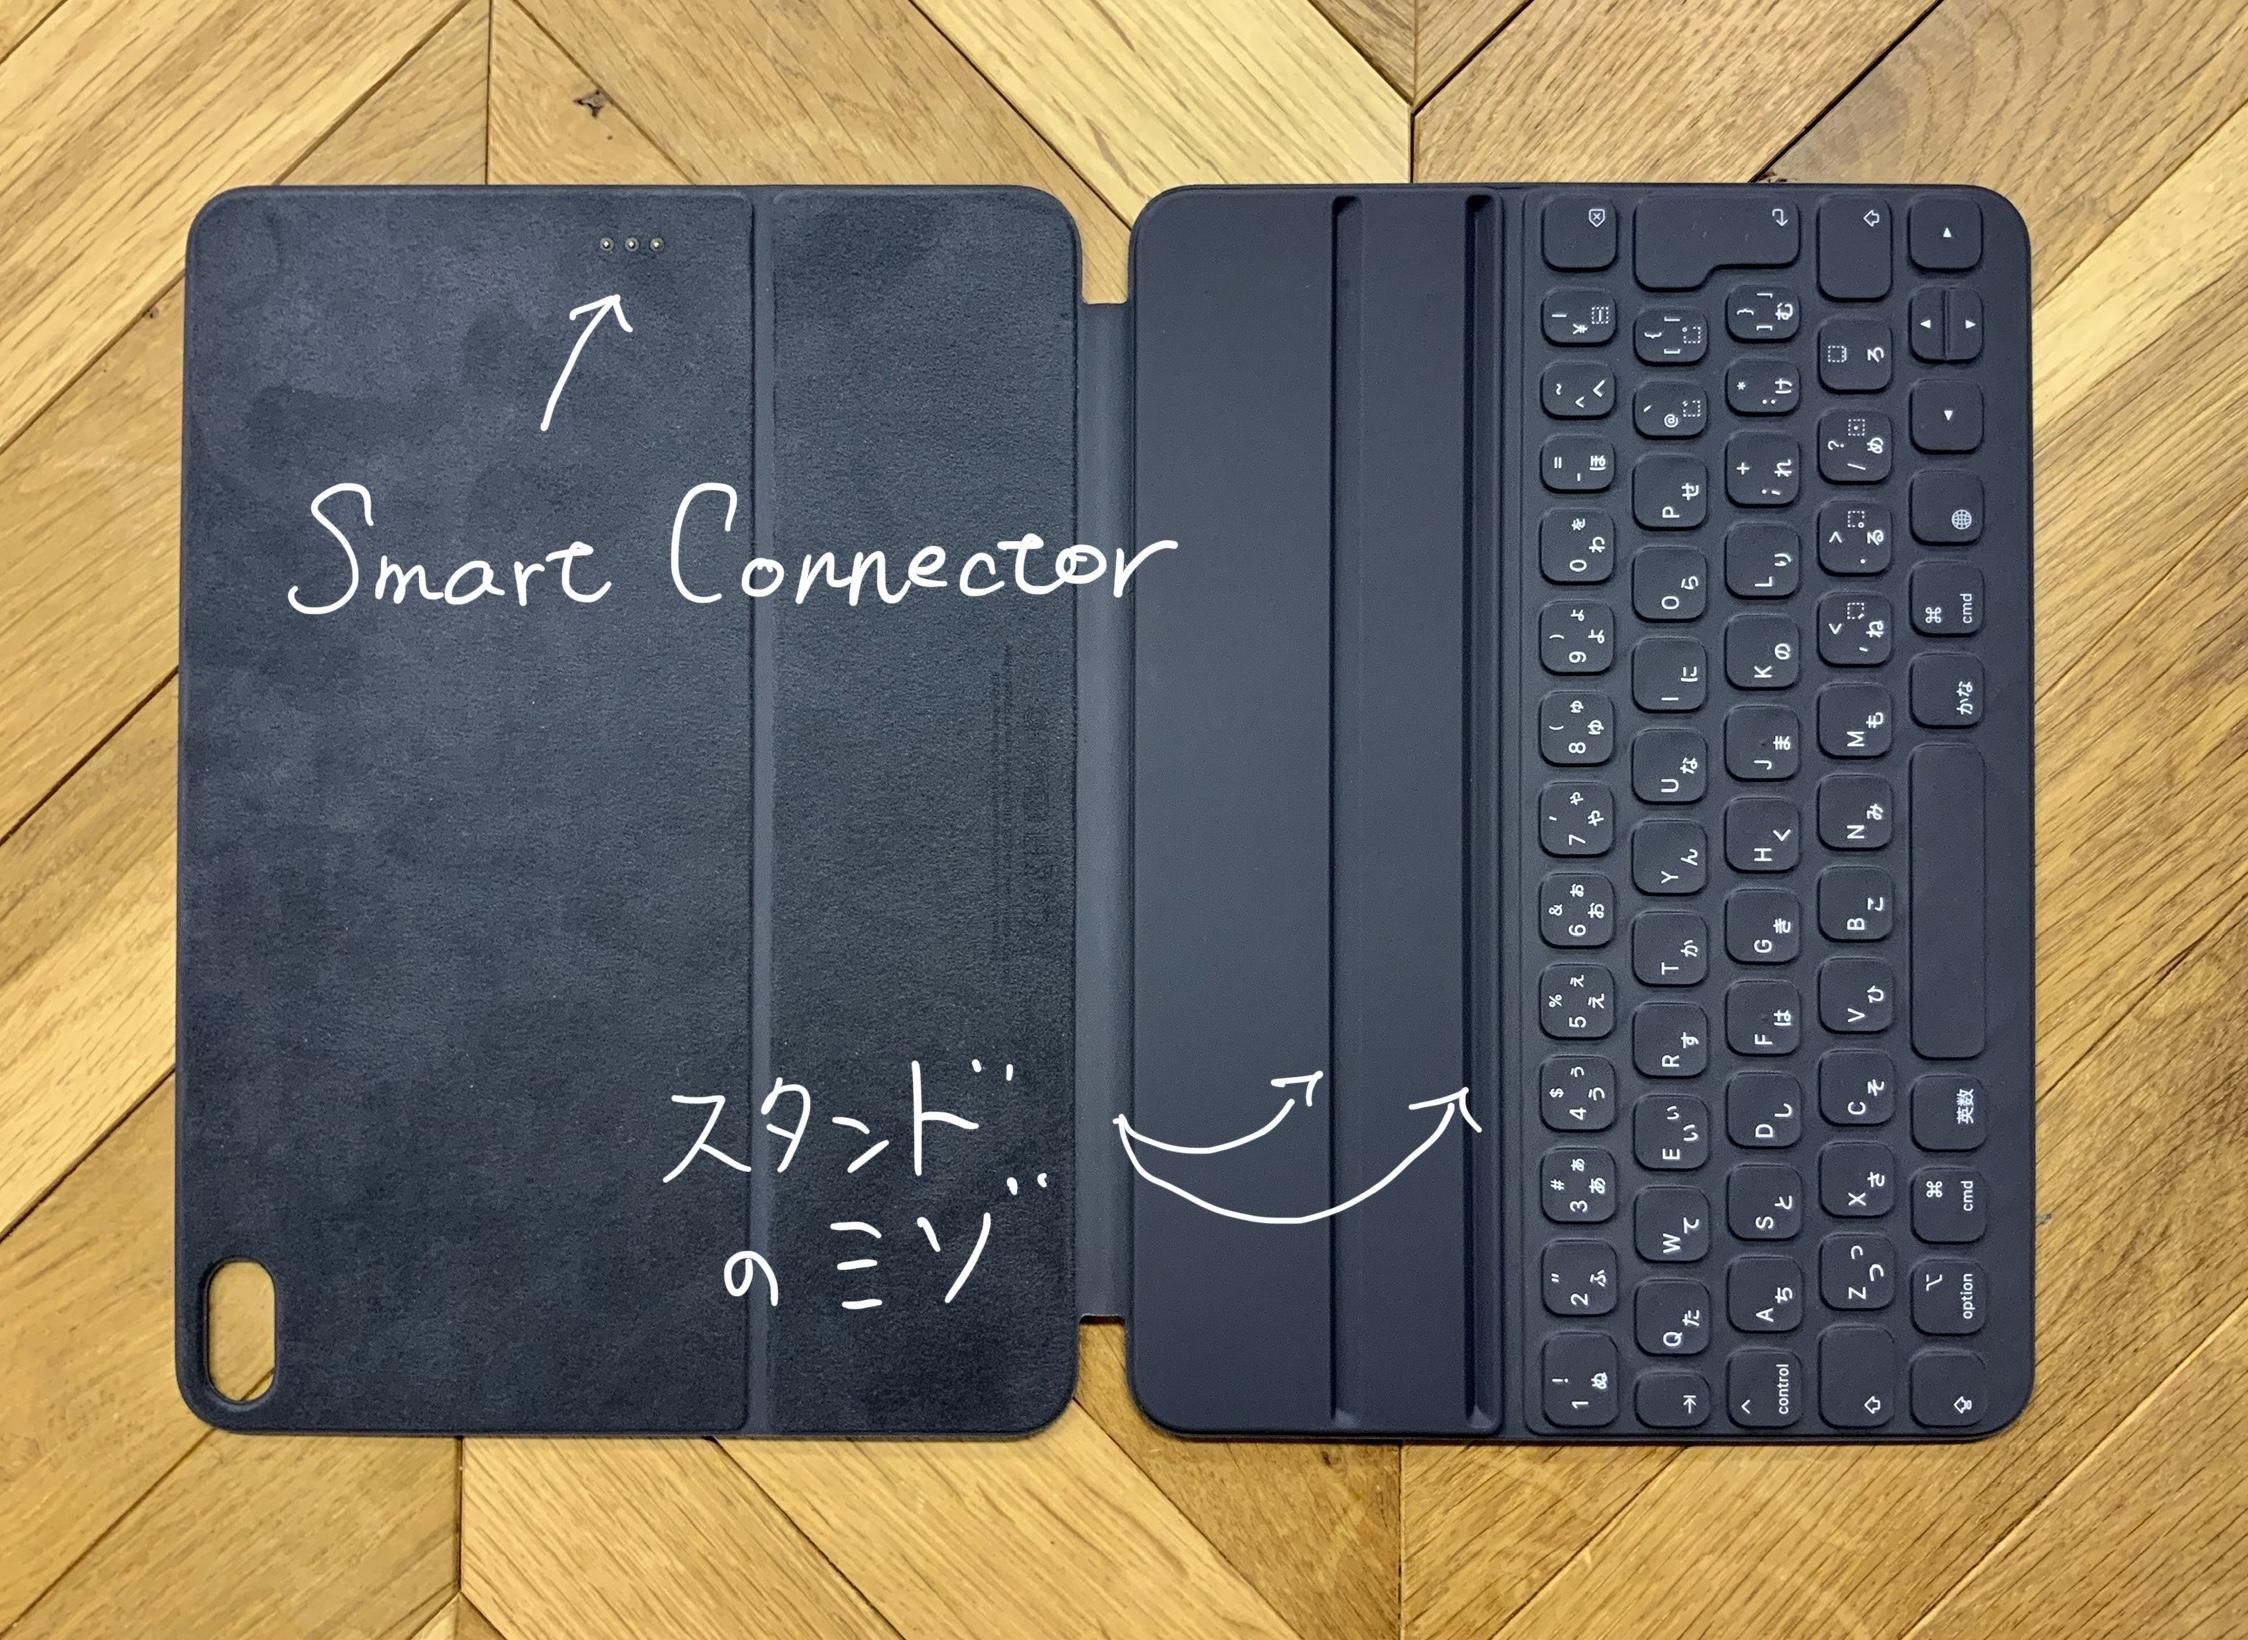 新型｢Smart Keyboard Folio｣の新しくなった部分まとめ。というか、実は